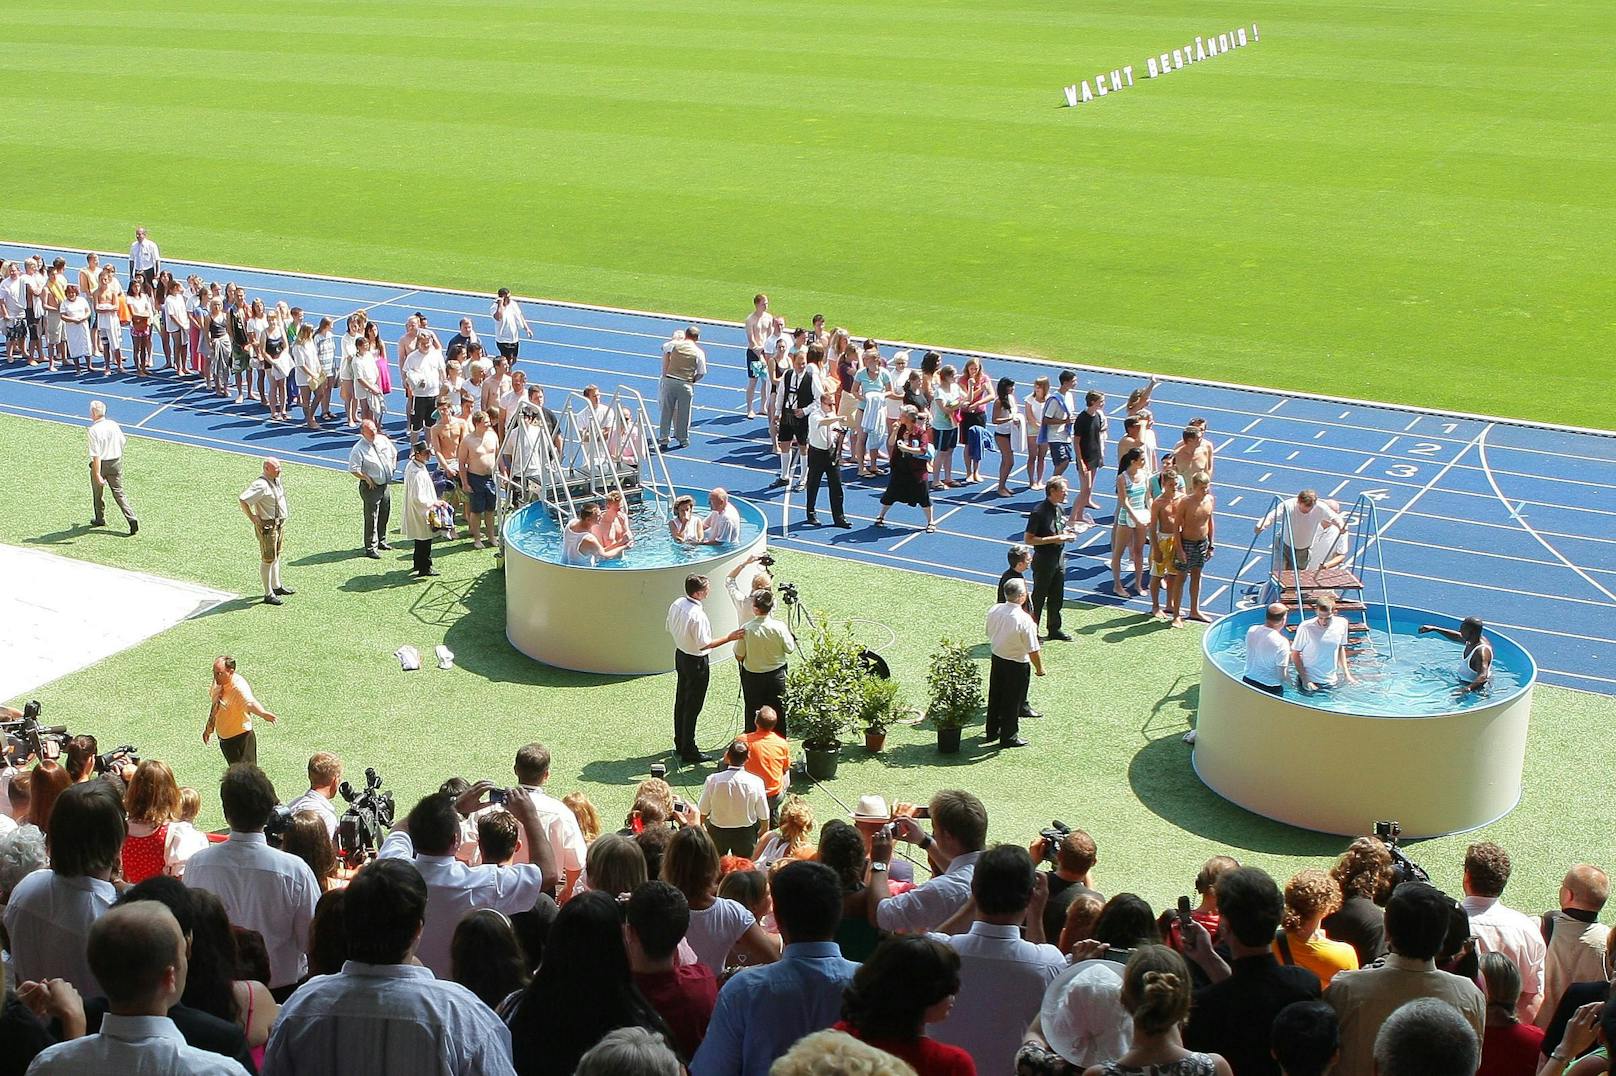 2009 fand der internationale Kongress der Zeugen Jehovas in Wien statt. Im Bild: Eine Massentaufe im Wiener Ernst-Happel-Stadion.